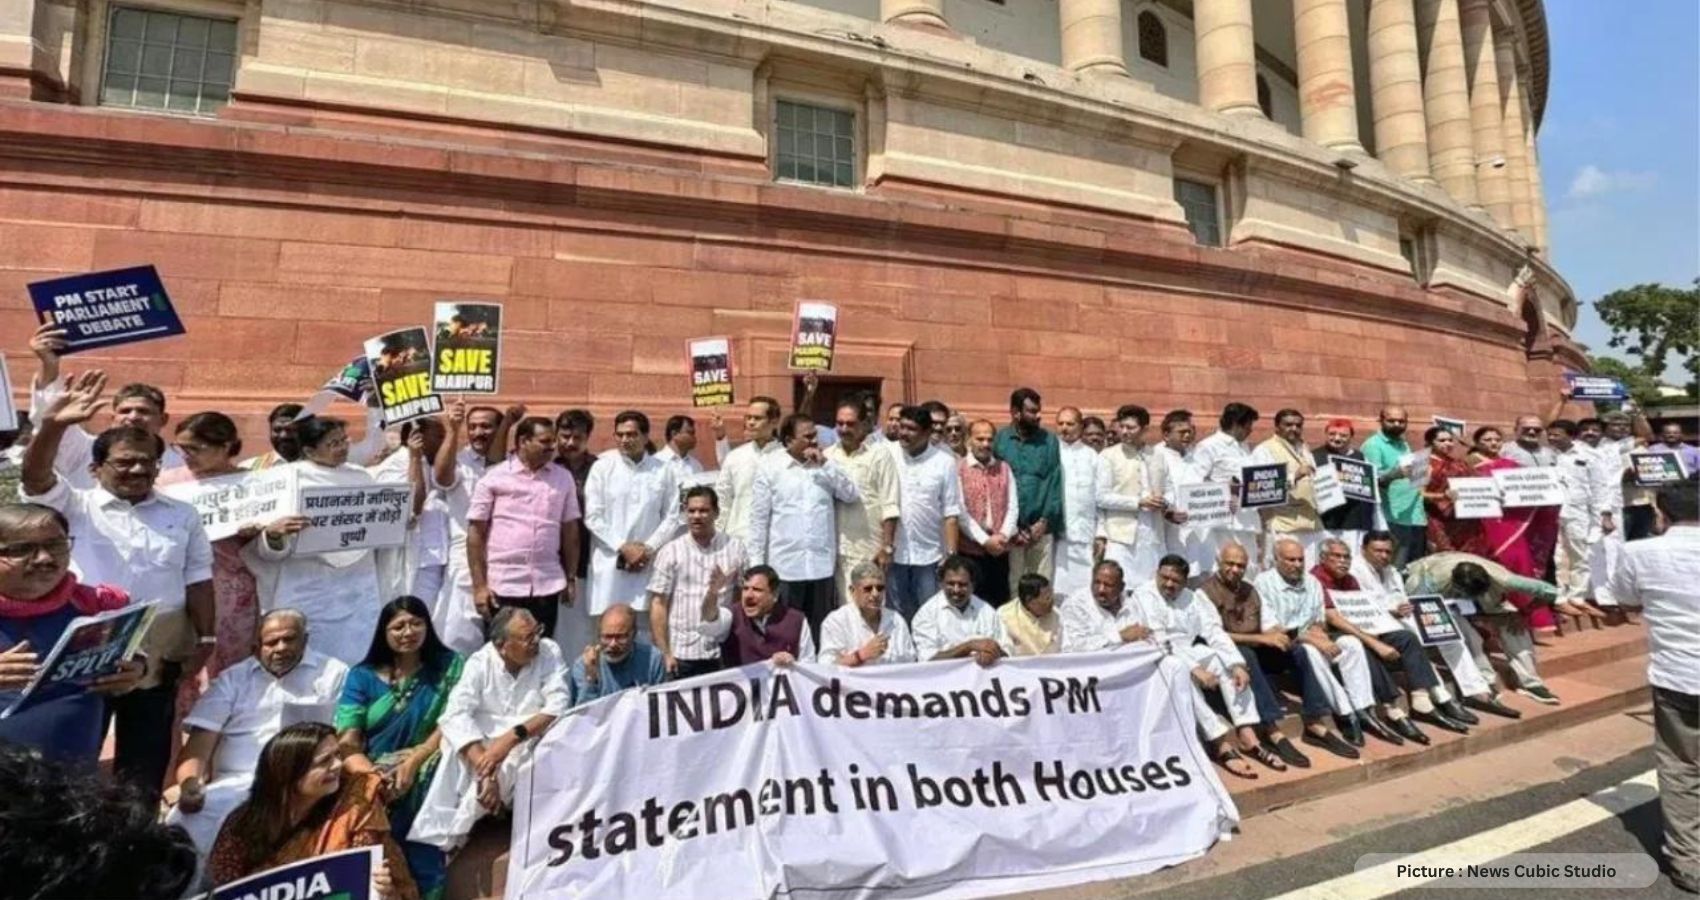 India’s PM Narendra Modi To Face No-Confidence Vote In Parliament